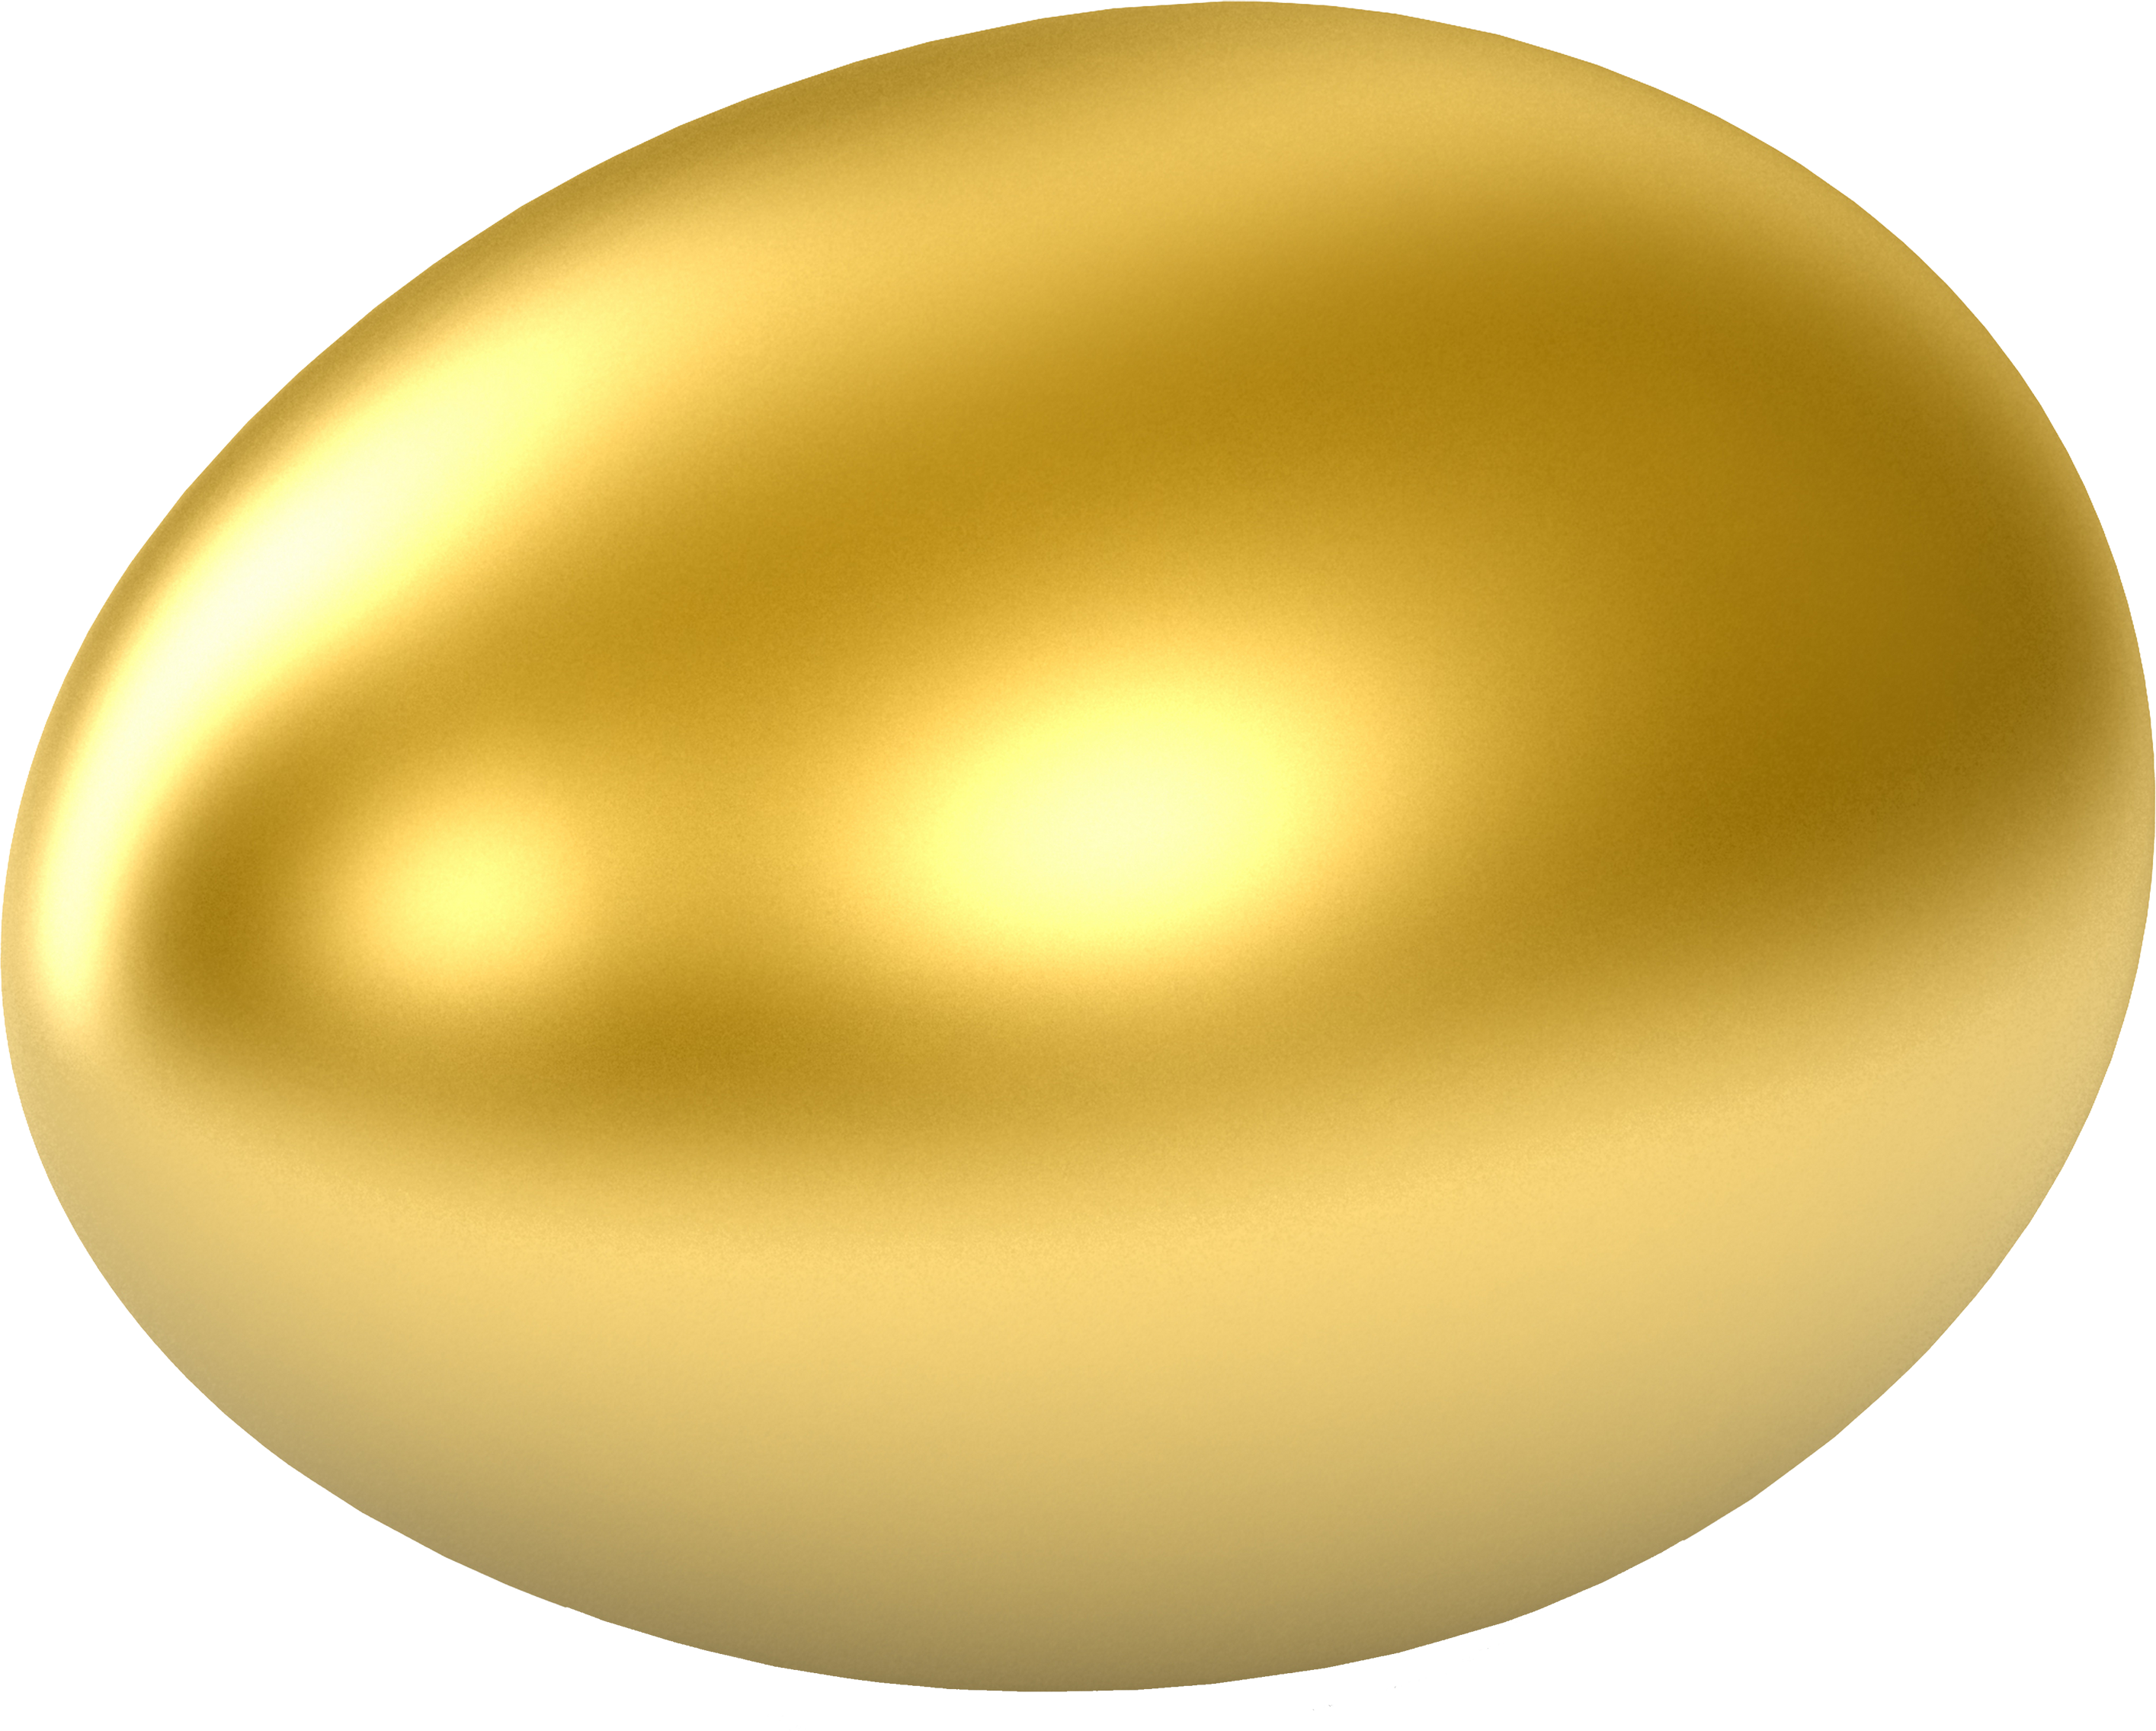 Egg PNG Image in Transparent - Egg Png